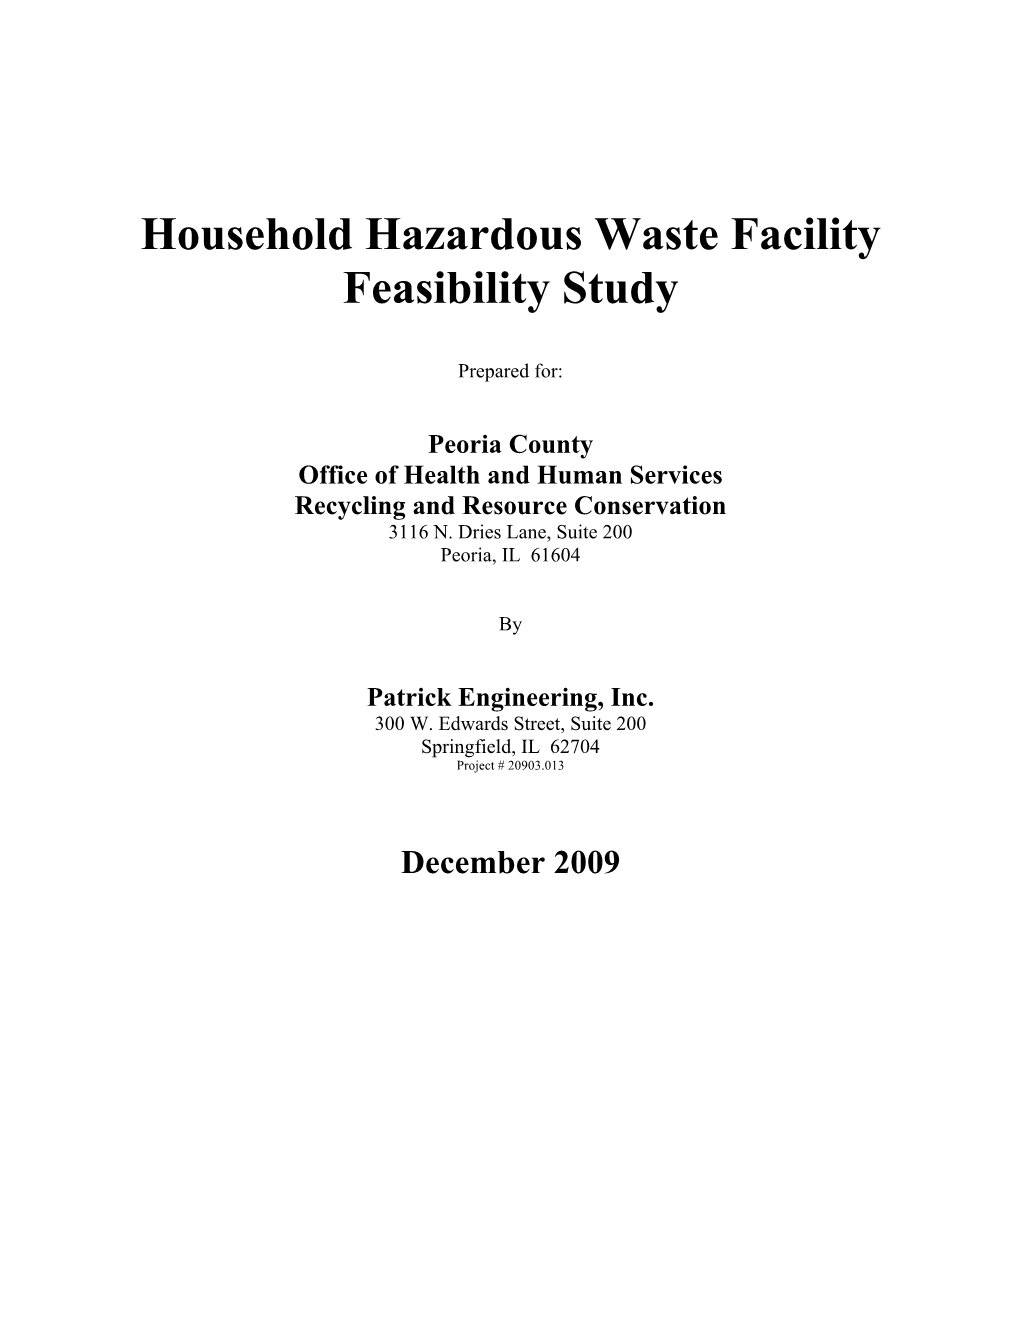 Household Hazardous Waste Facility Feasibility Study